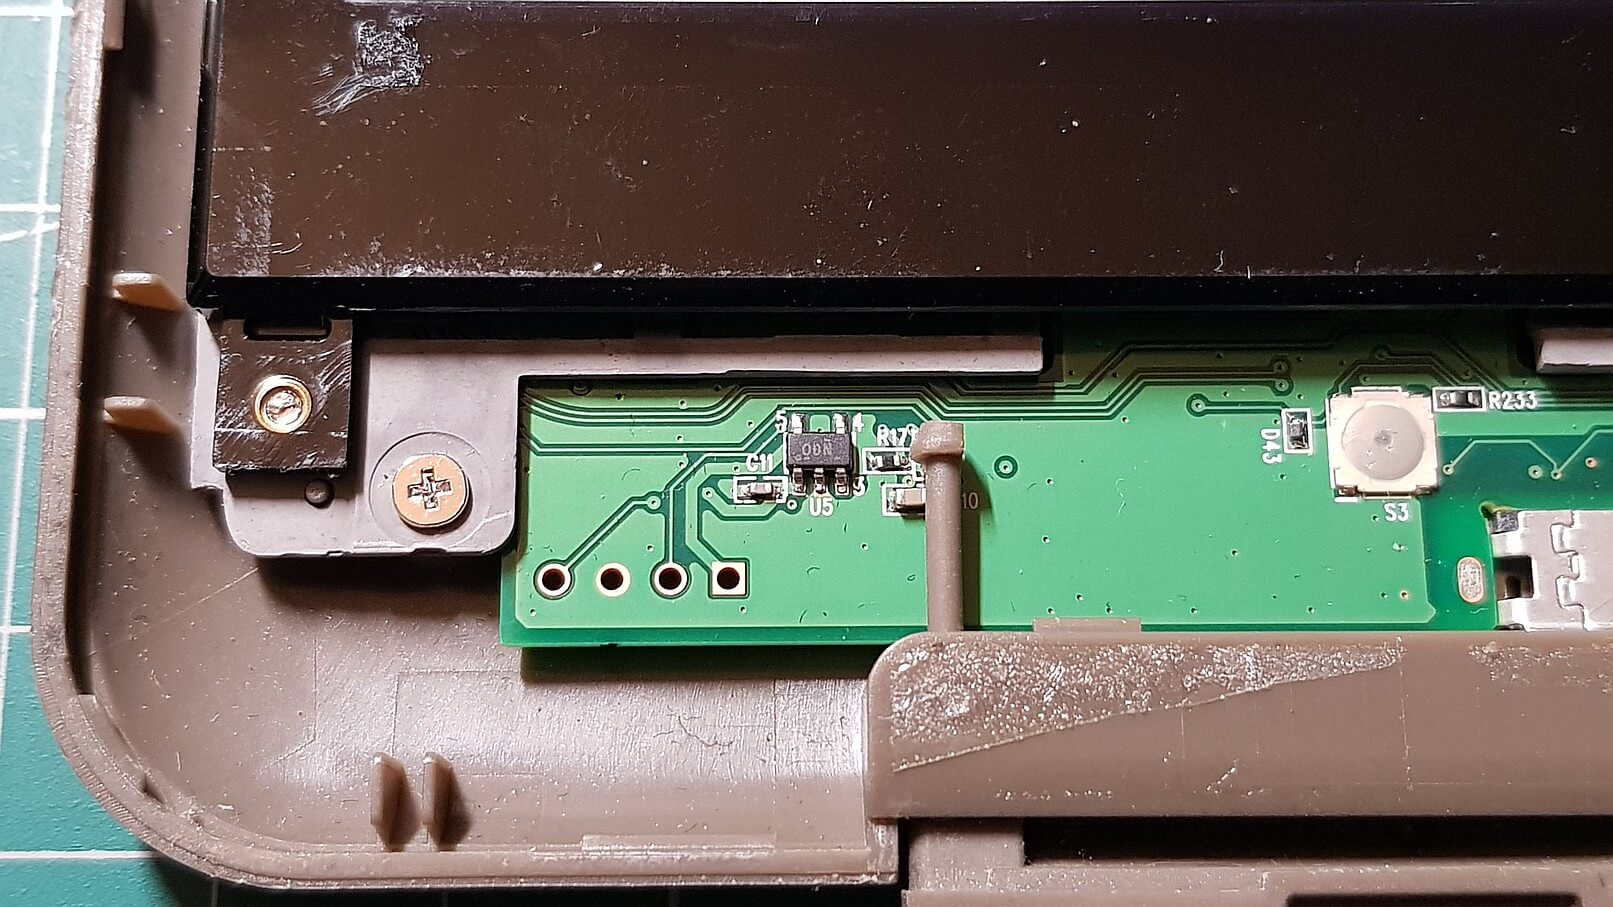 Detailansicht des unteren Bereichs mit USB-Buchse und Tolino-Taste (rechter Mikrotaster)